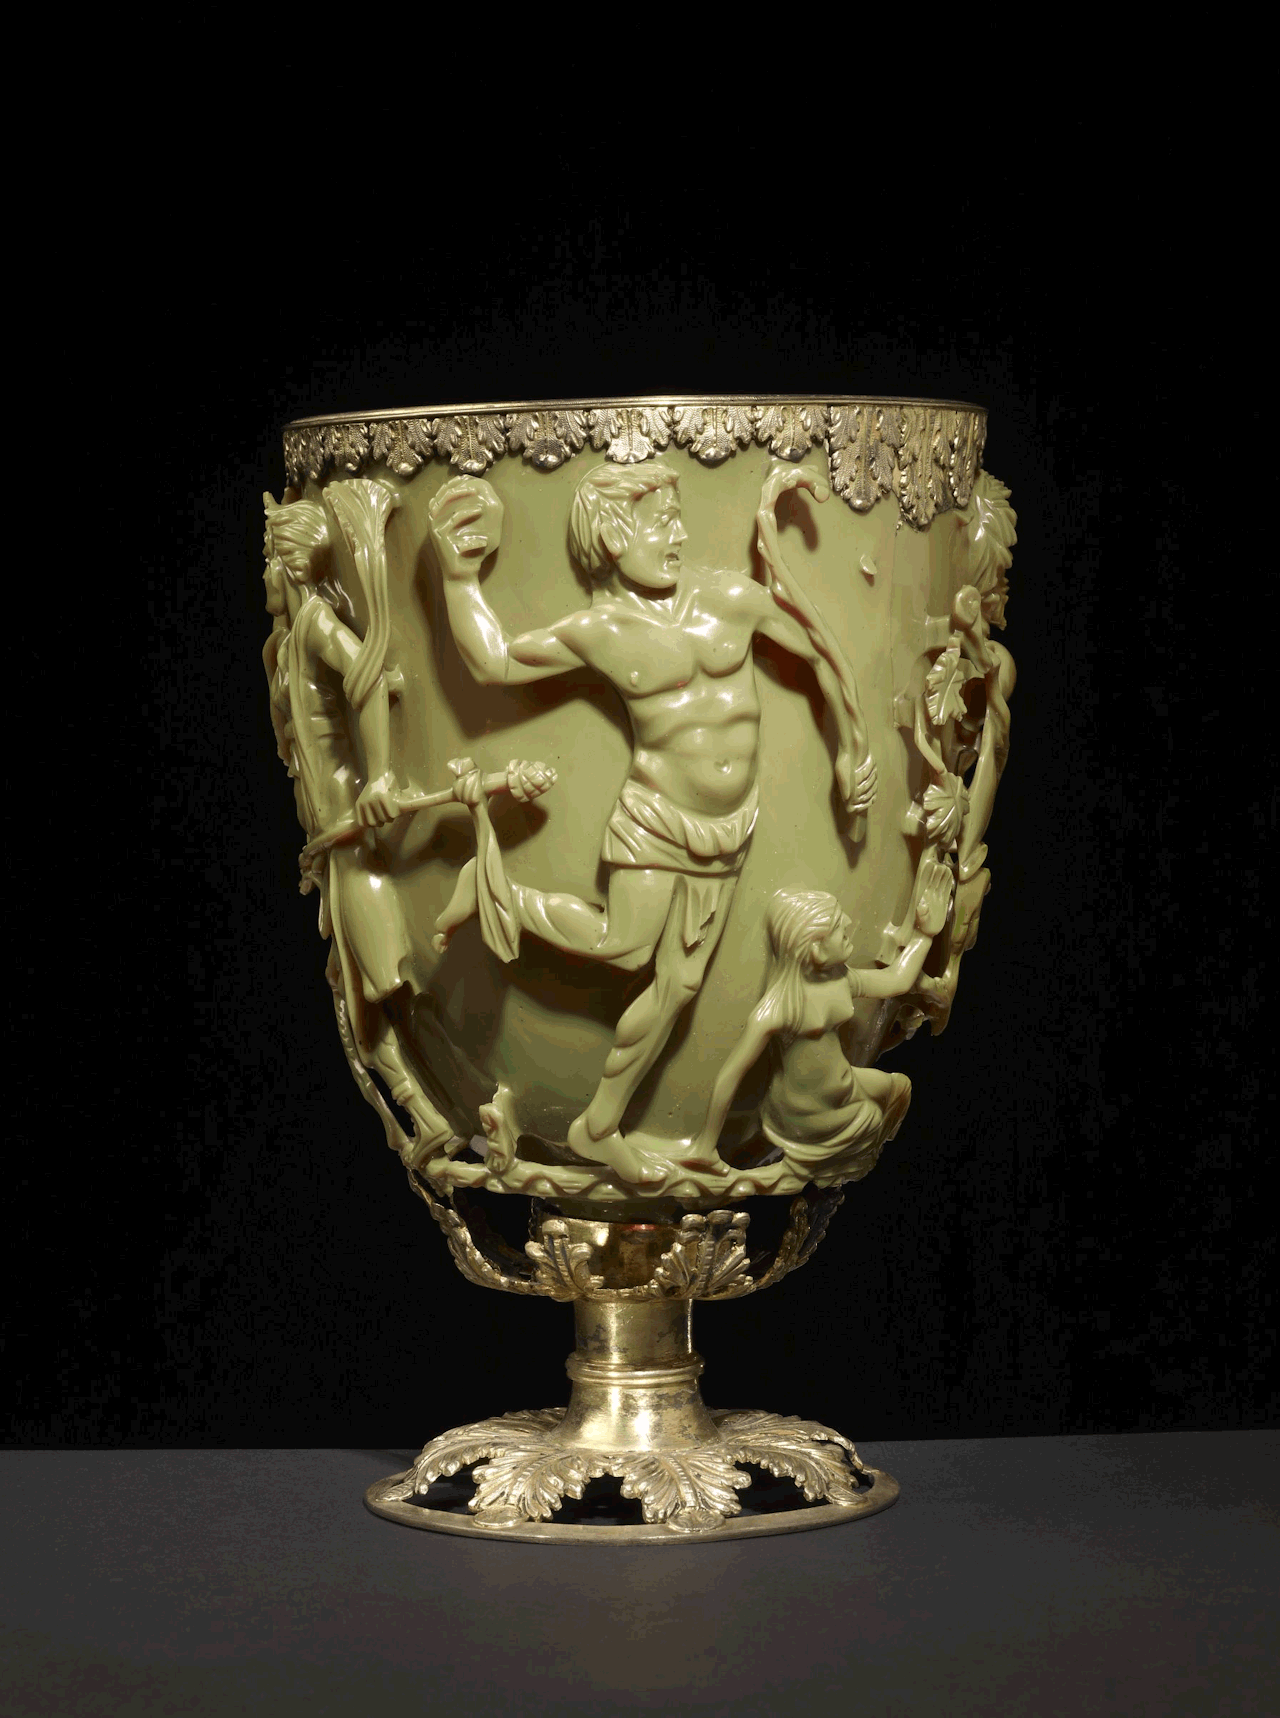 रोमन लाइकर्गस कप 1,600 साल पुराना जेड ग्रीन रोमन चैसिस है। जब आप इसके अंदर प्रकाश का स्रोत डालते हैं तो यह जादुई रूप से रंग बदलता है। यह जेड हरा दिखाई देता है जब सामने से जलाया जाता है लेकिन पीछे से या अंदर से जलाया जाता है।